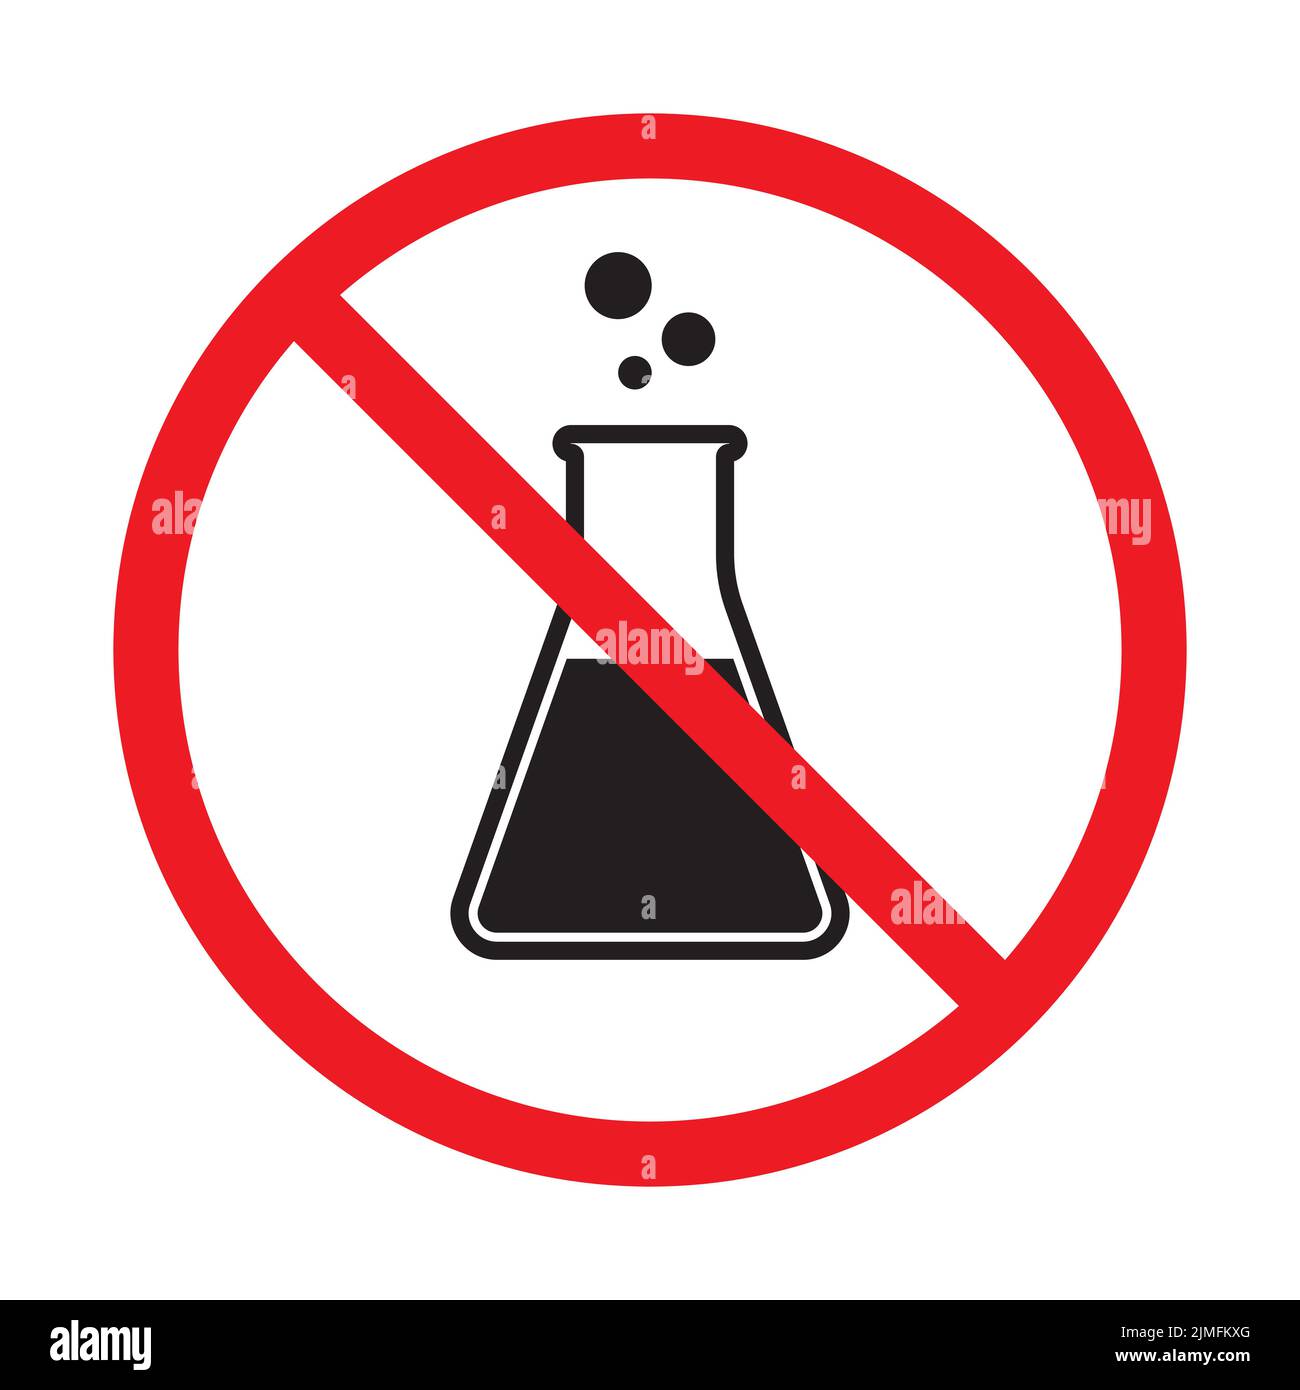 Kein Konservierungsmittel Symbolvektor chemikalienfreies Zeichen für Grafikdesign, Logo, Website, Social Media, mobile App, UI-Abbildung Stock Vektor